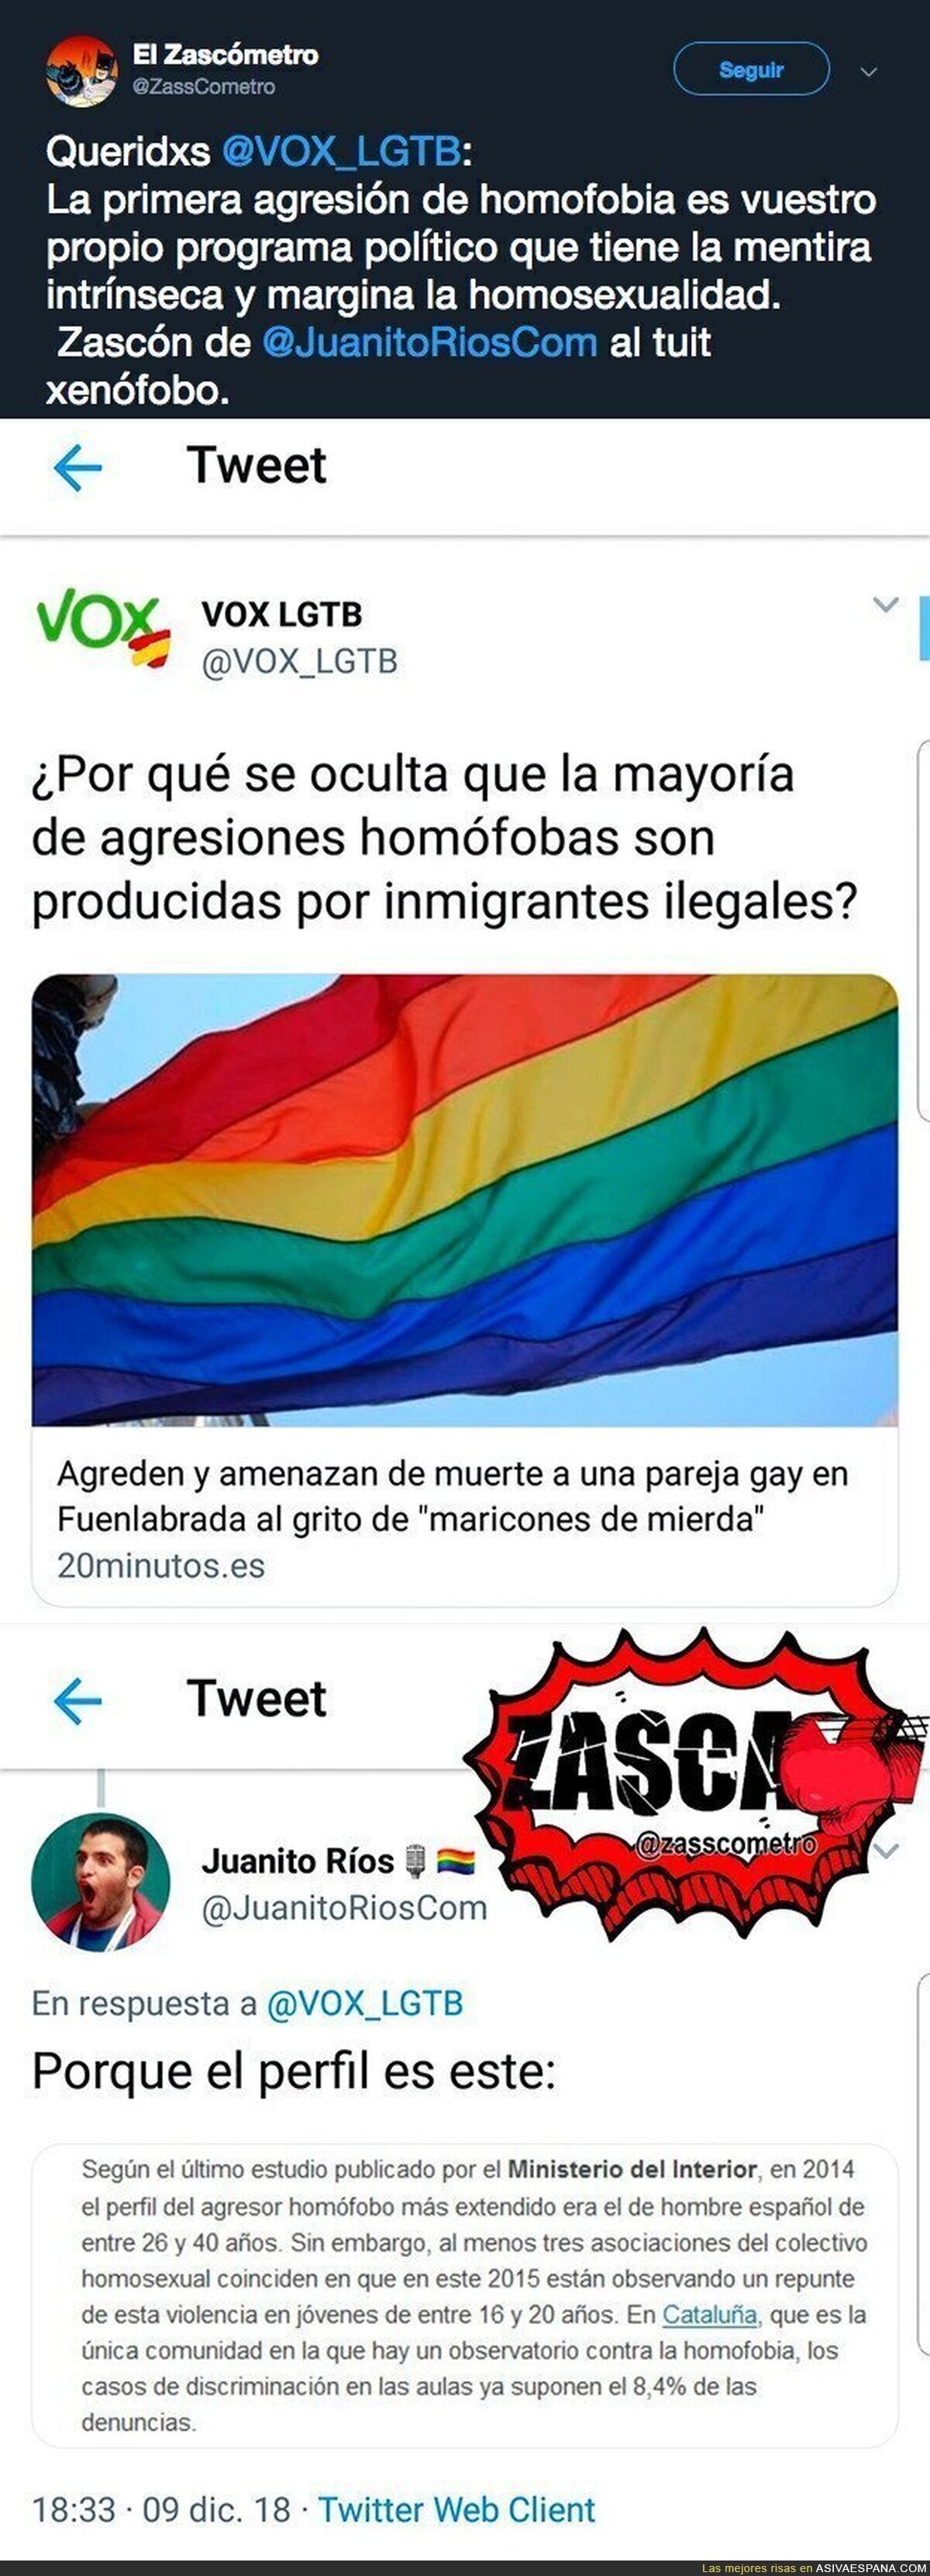 La cuenta LGTB de VOX hablando sobre agresiones homófobas producidas por inmigrantes ilegales